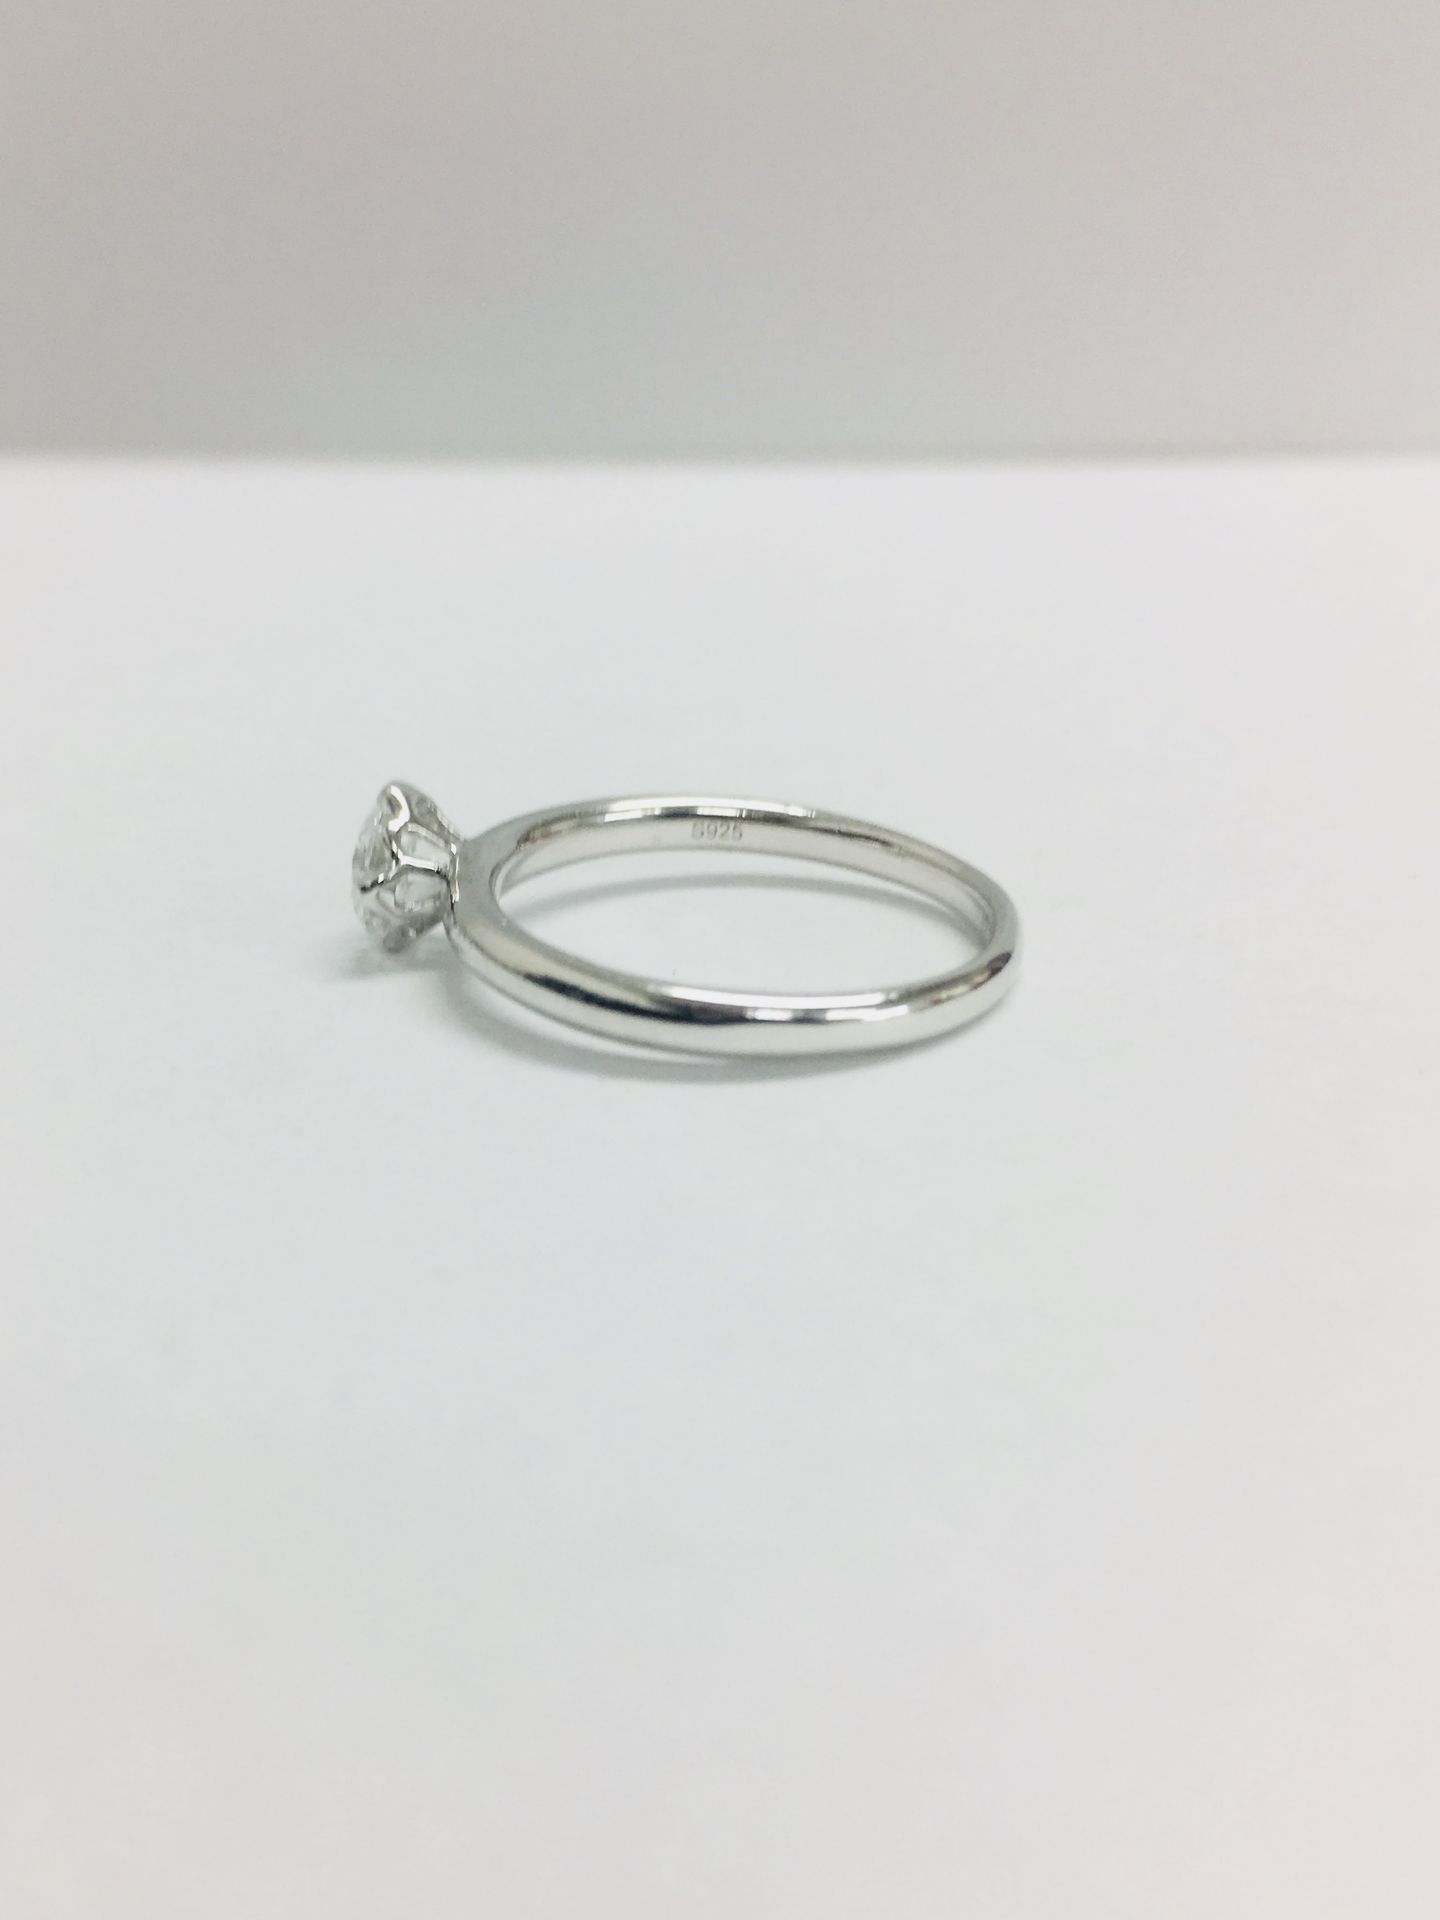 Platinum diamond solitaire ring,0.50ct brillliant cut diamond D colour vs clarity,2.9gms platinum , - Image 4 of 7